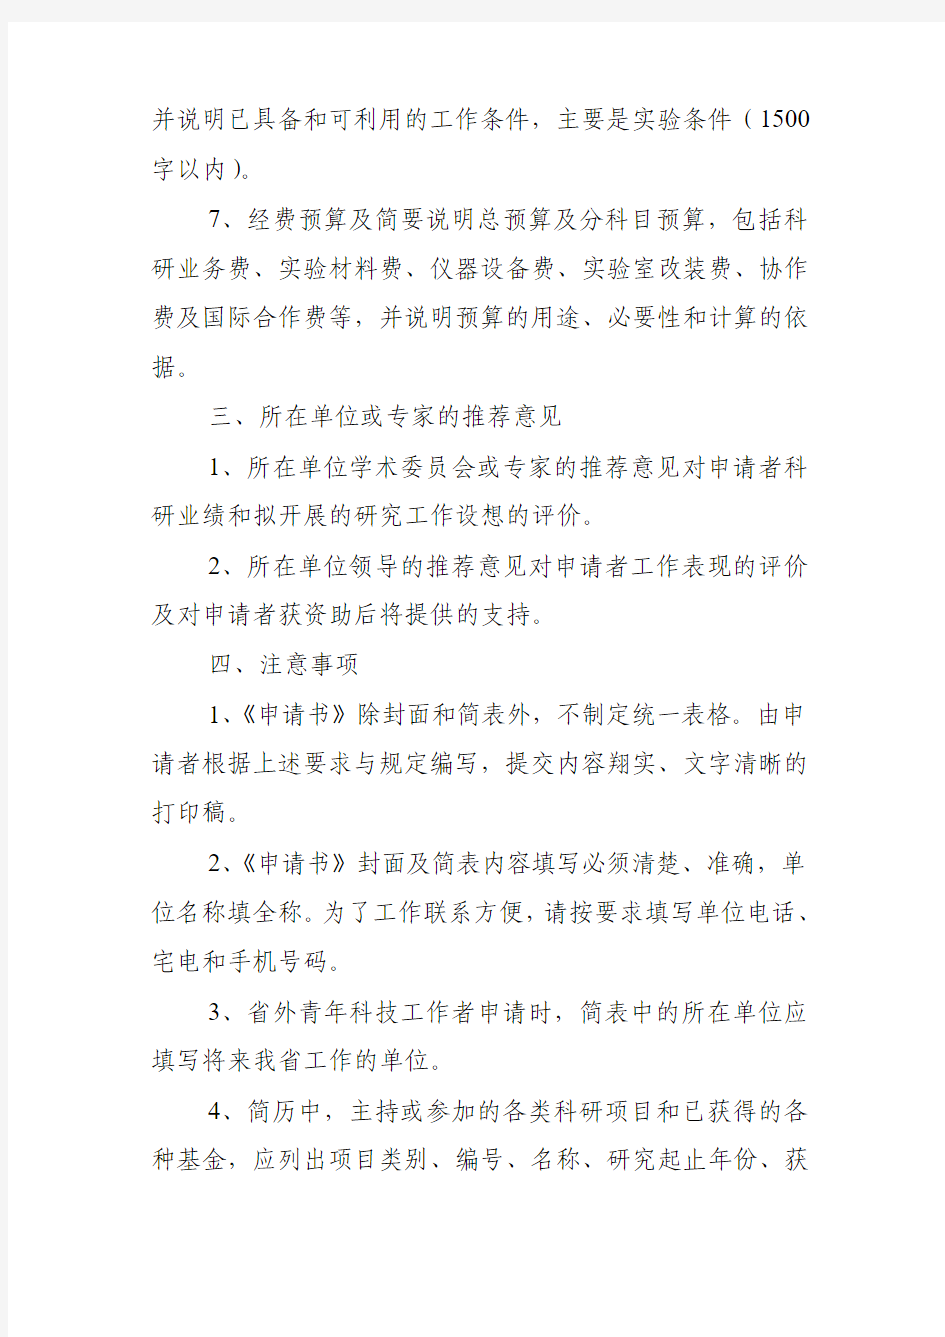 黑龙江省杰出青年科学基金申请书的编写要求